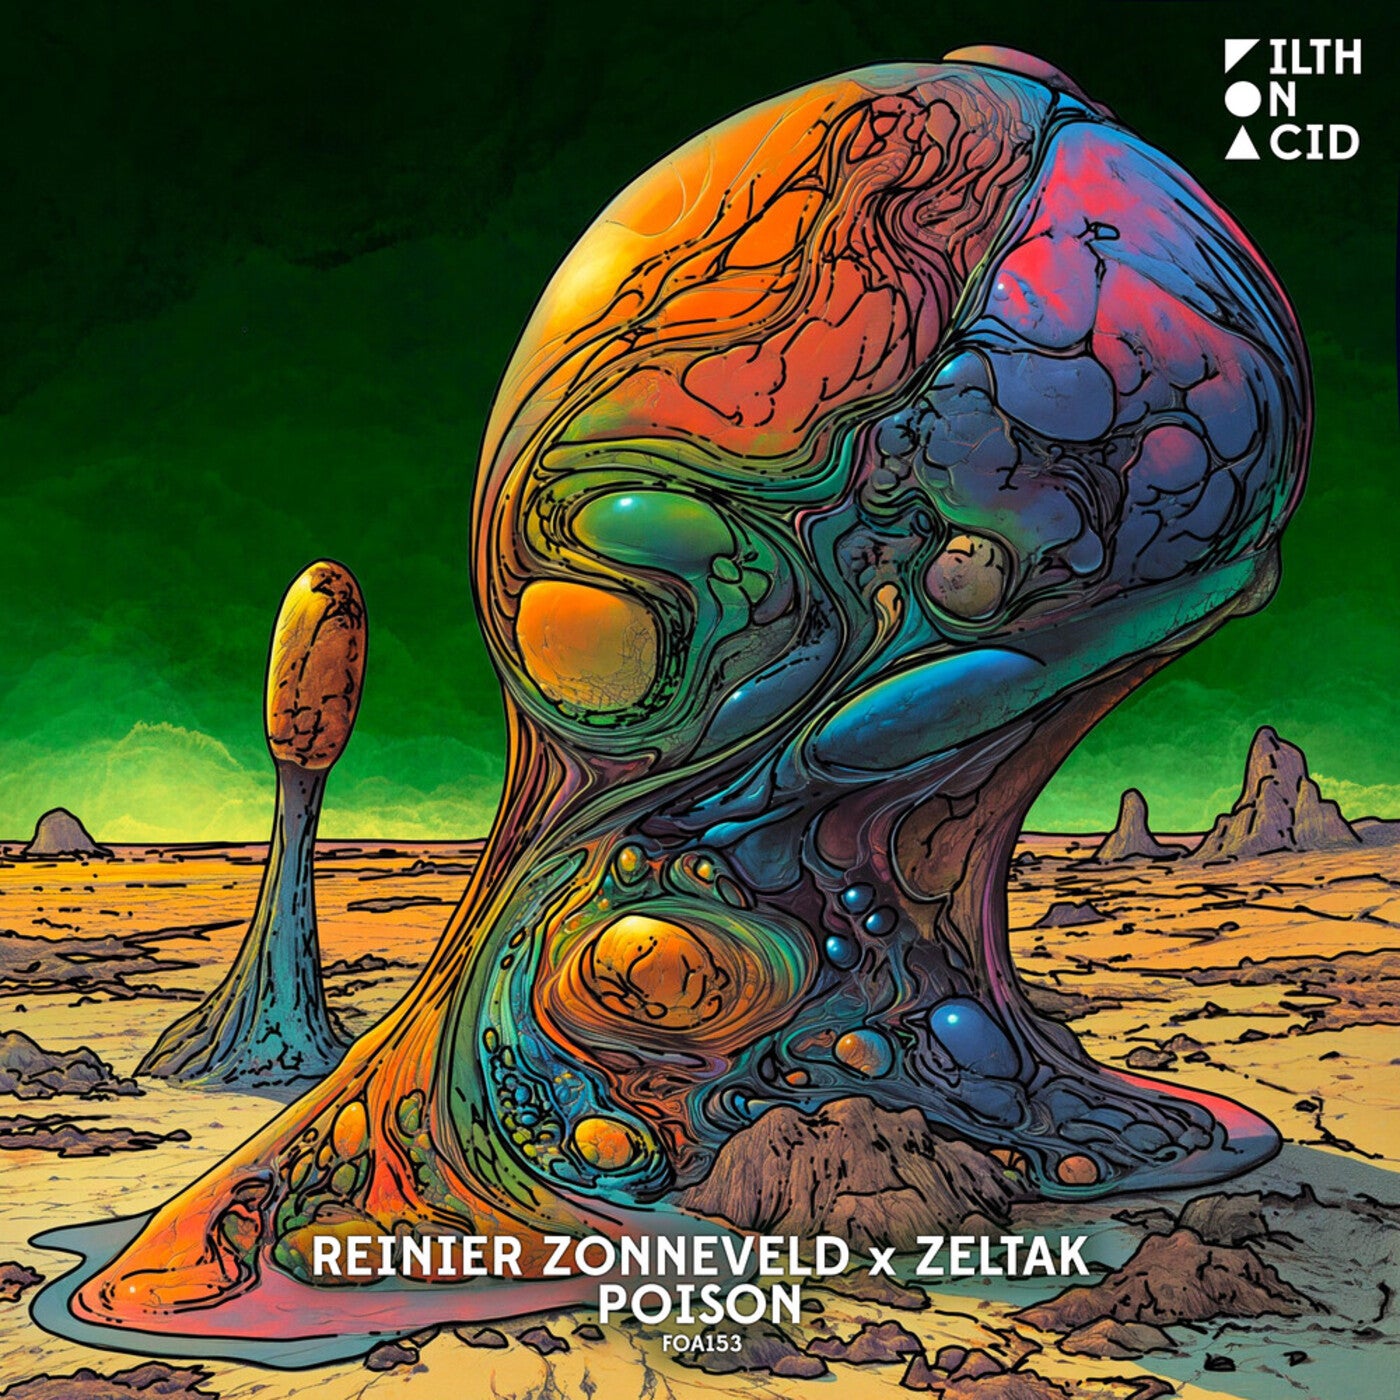 image cover: Reinier Zonneveld, Zeltak - Poison on Filth on Acid